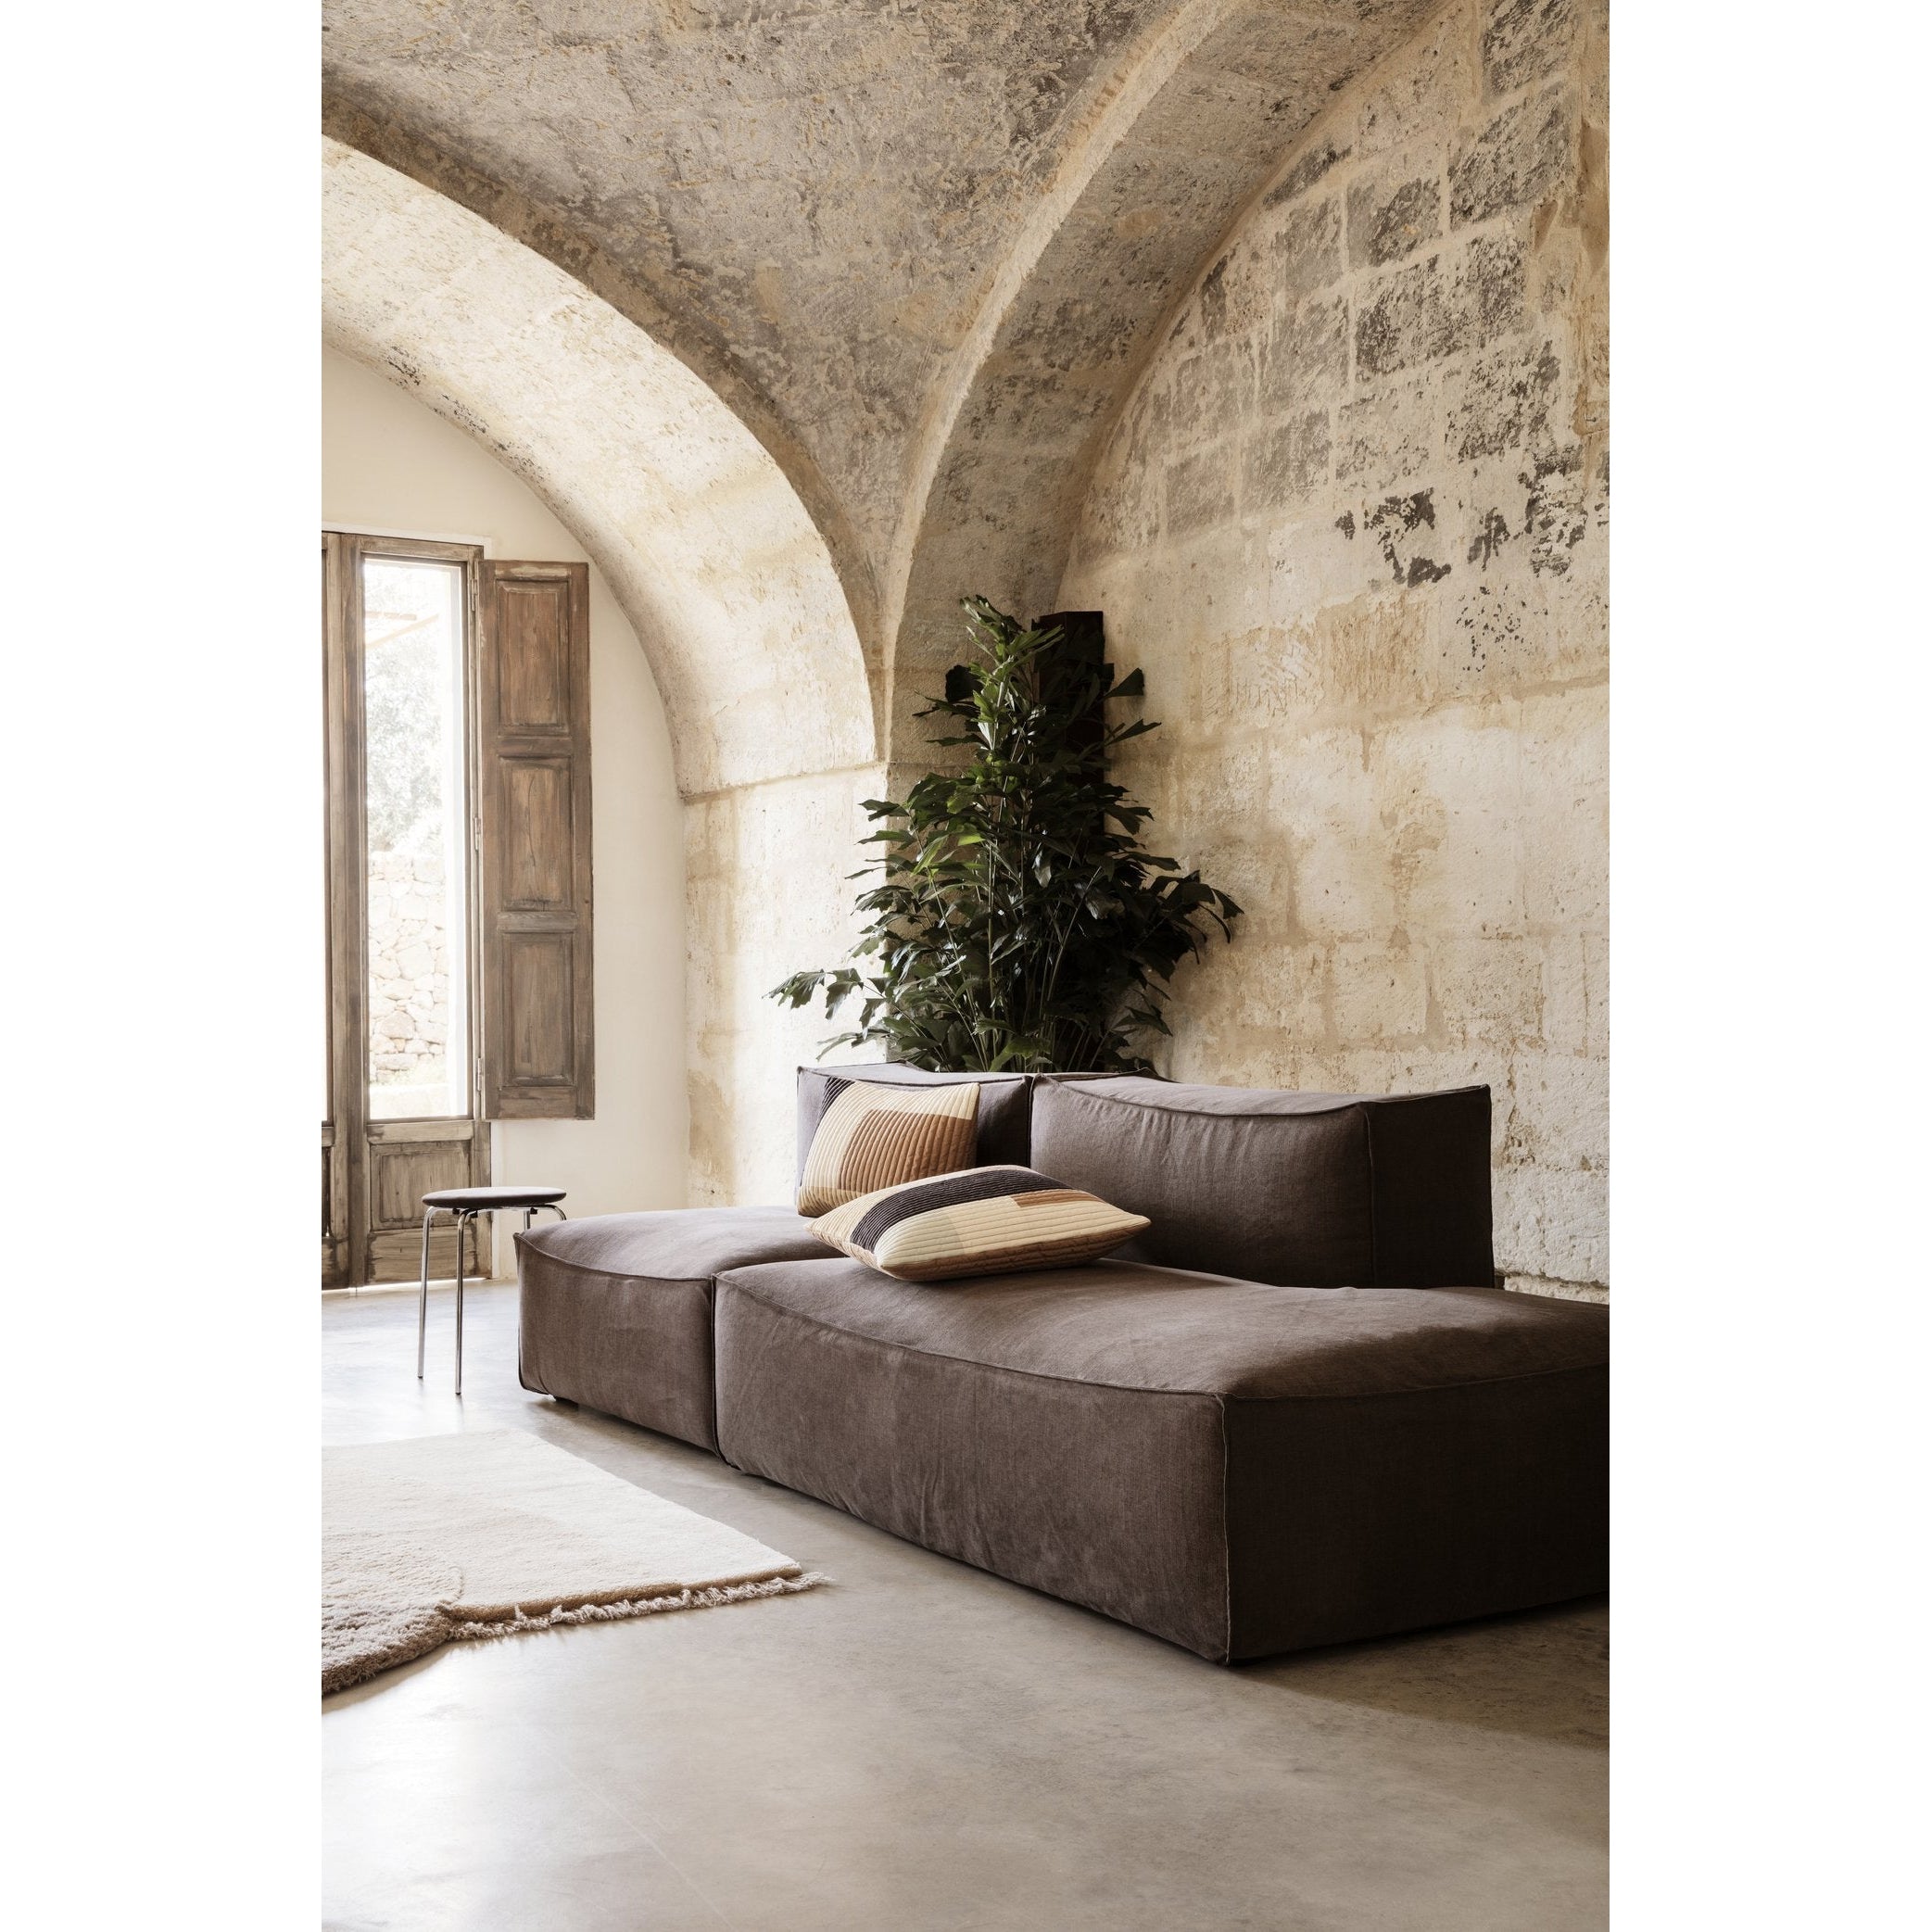 Ferm Living Quilt Cushion XL Bordeaux，80 x 50厘米